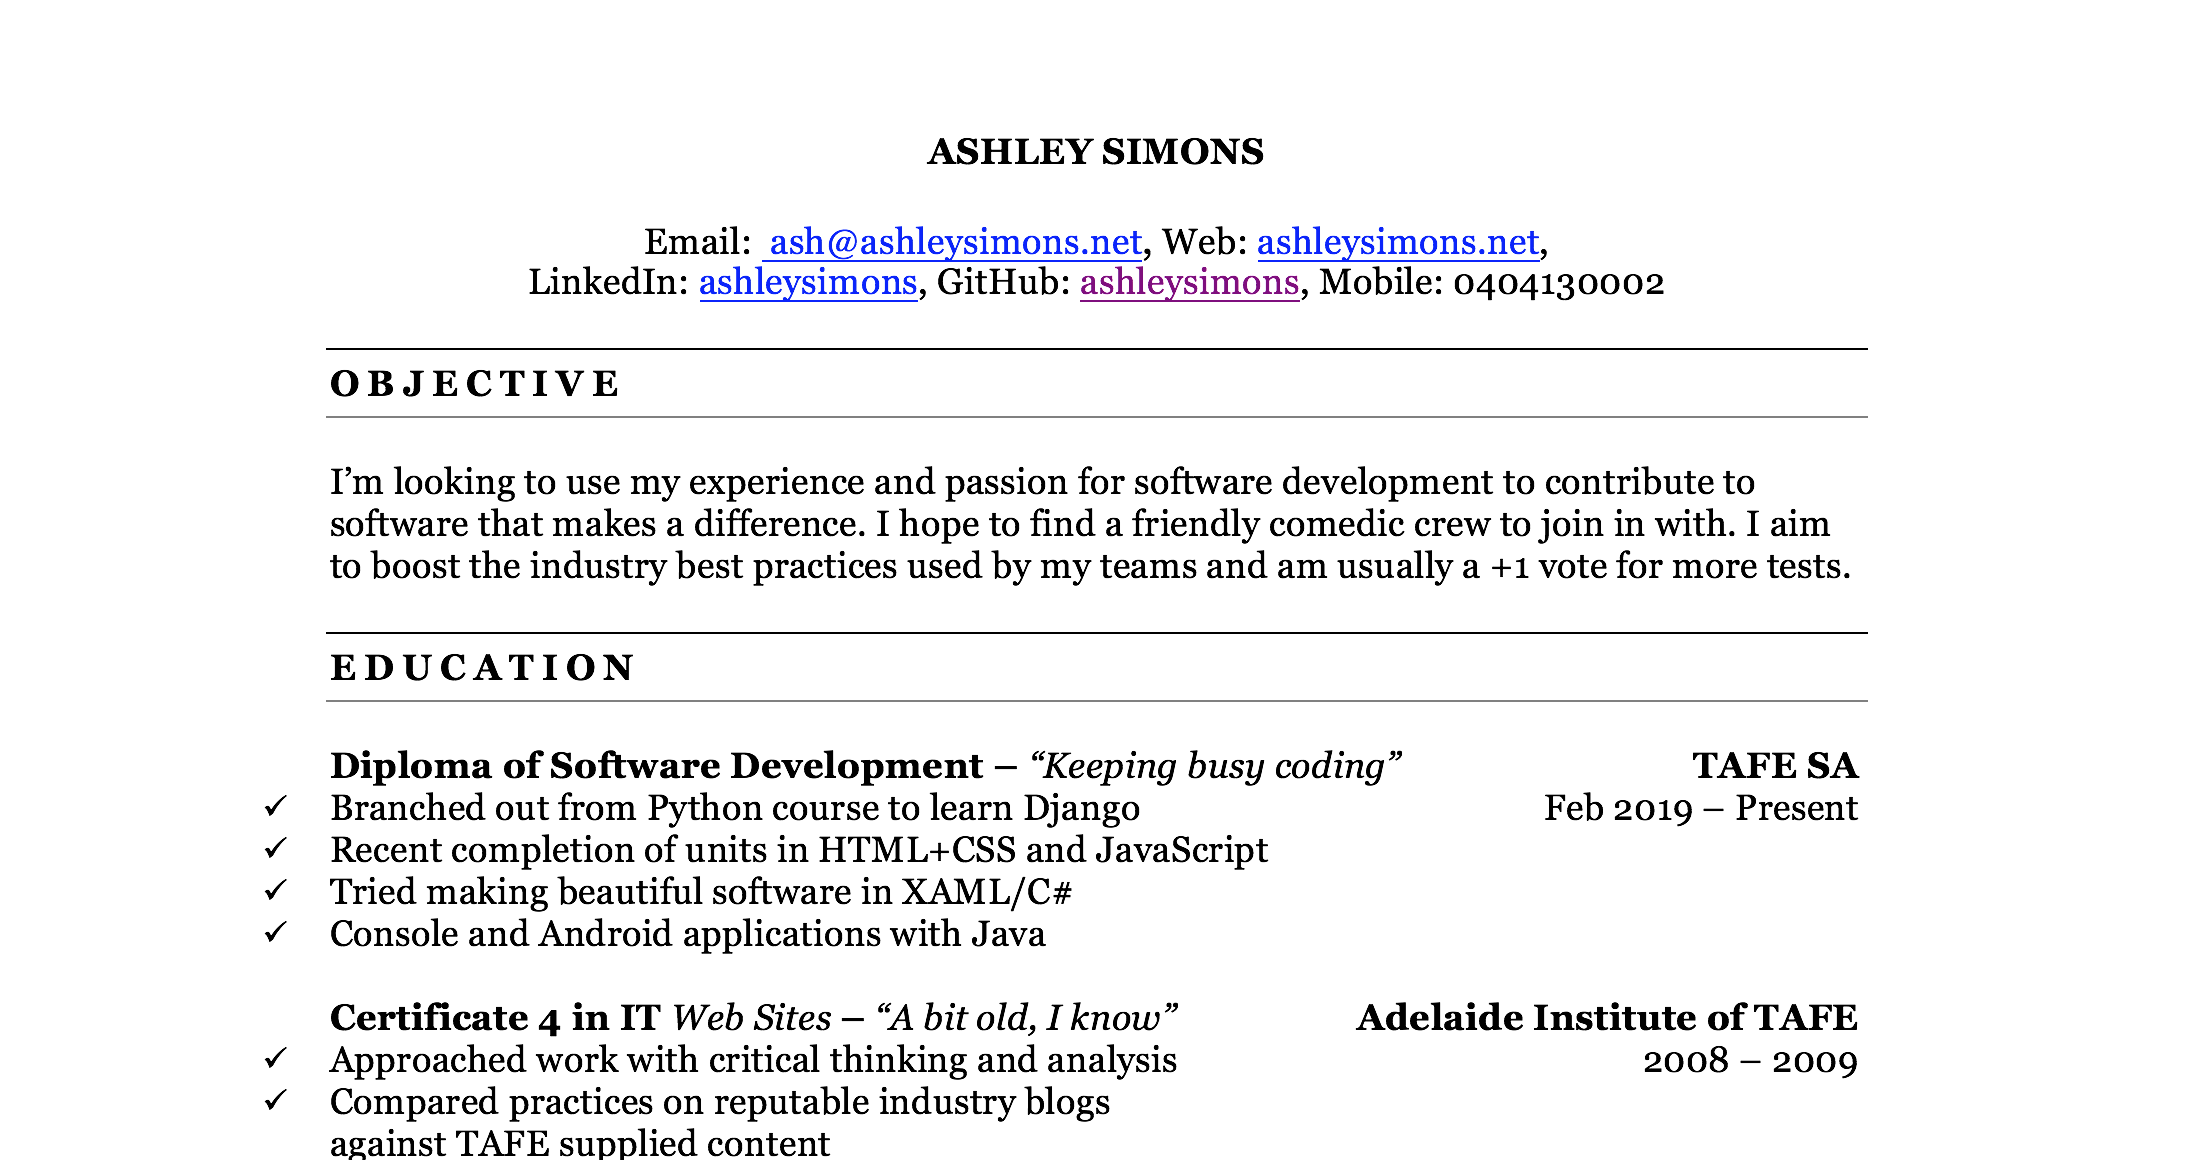 Ashley Simons' resume